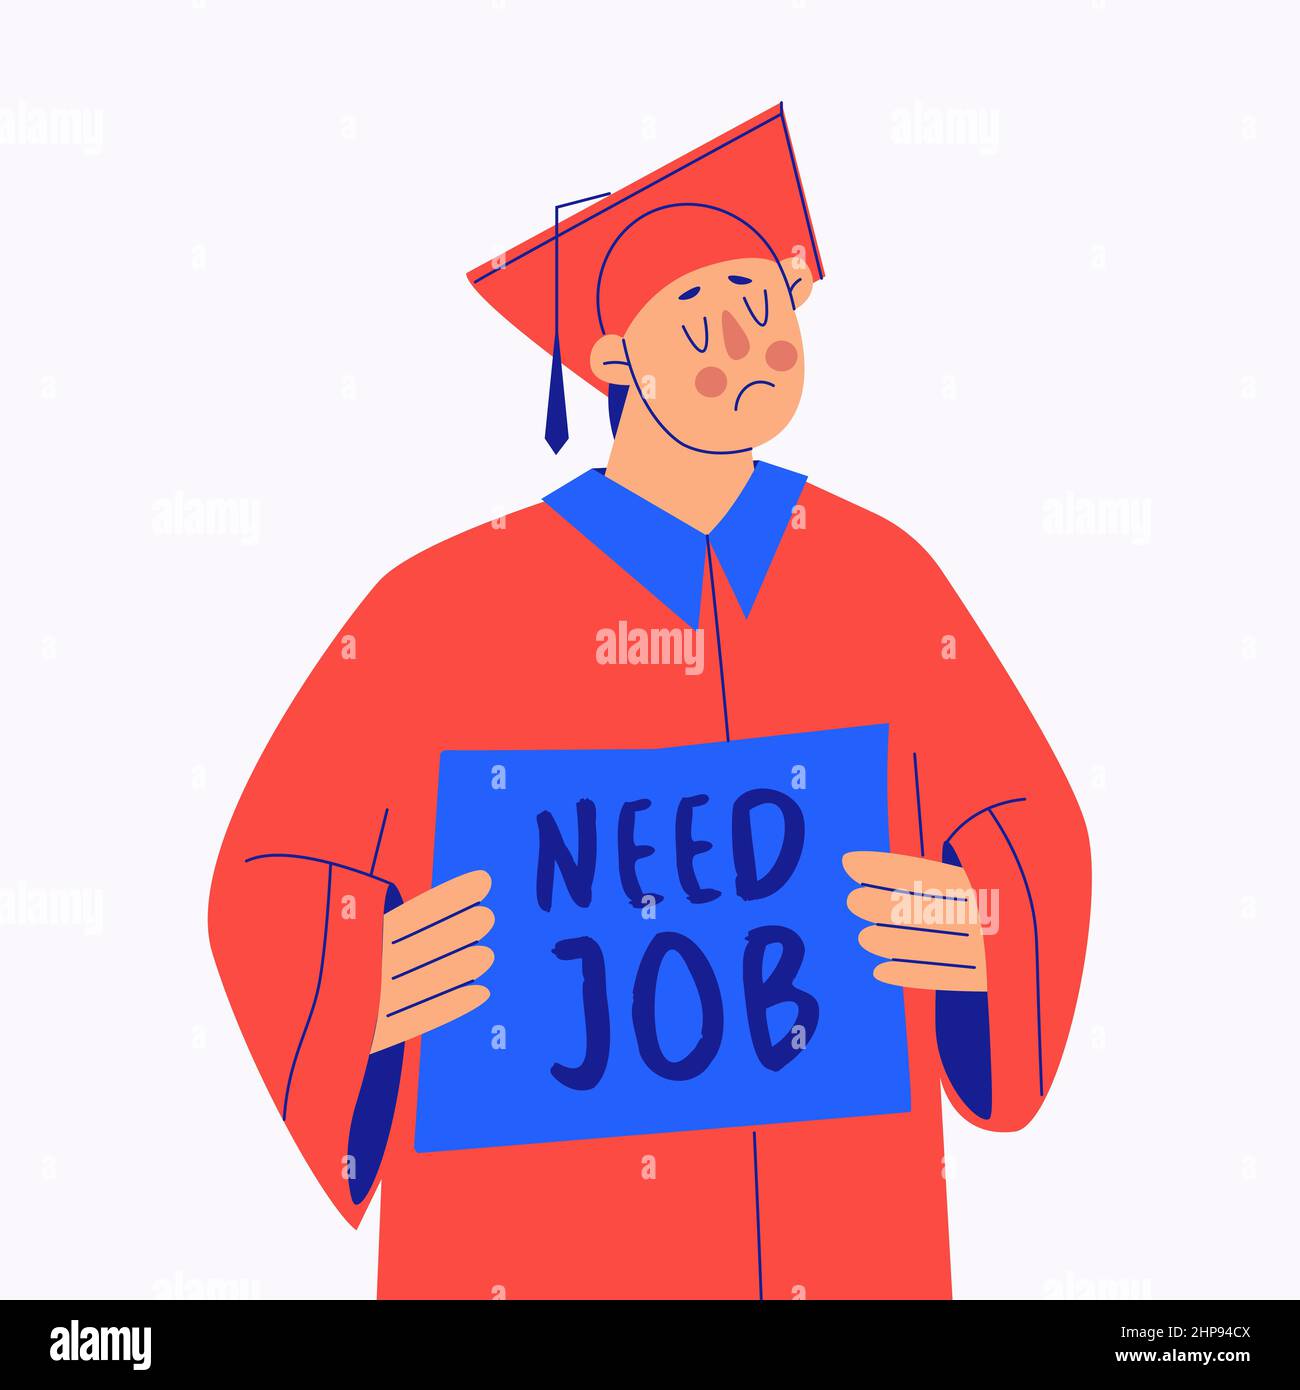 Graduate Student mit Schild mit Text brauchen Job. Probleme der Absolventen mit dem Mangel an Arbeitsplätzen in ihrem Fachgebiet verbunden. Junger trauriger Mann fragt nach Stock Vektor